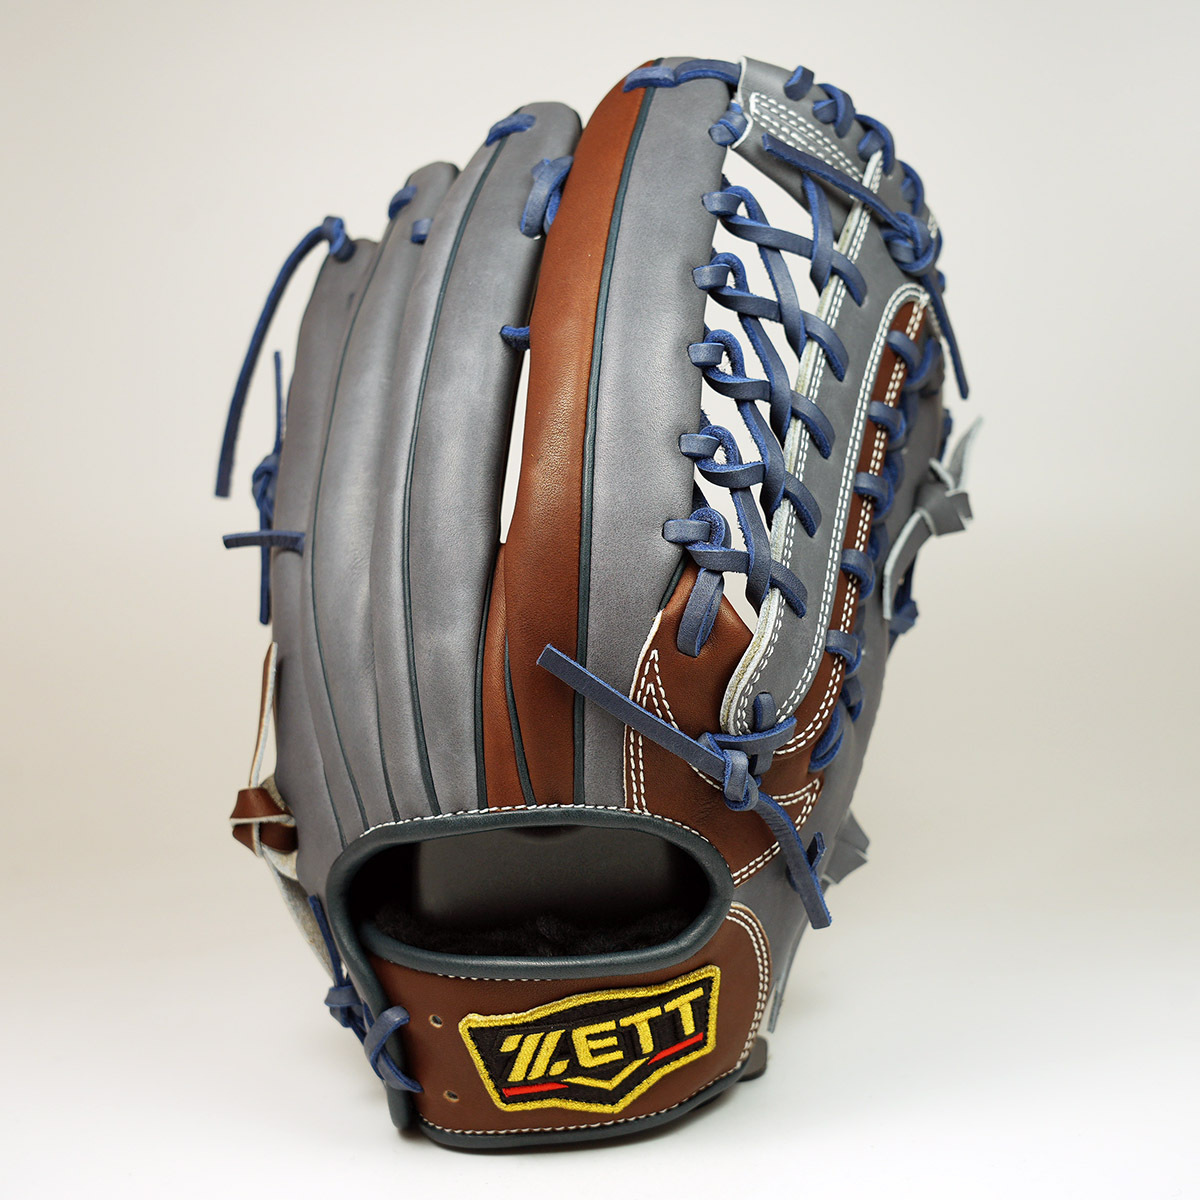 日本進口ZETT PROSTATUS ORDER 頂級金標軟式外野手套棒球手套 